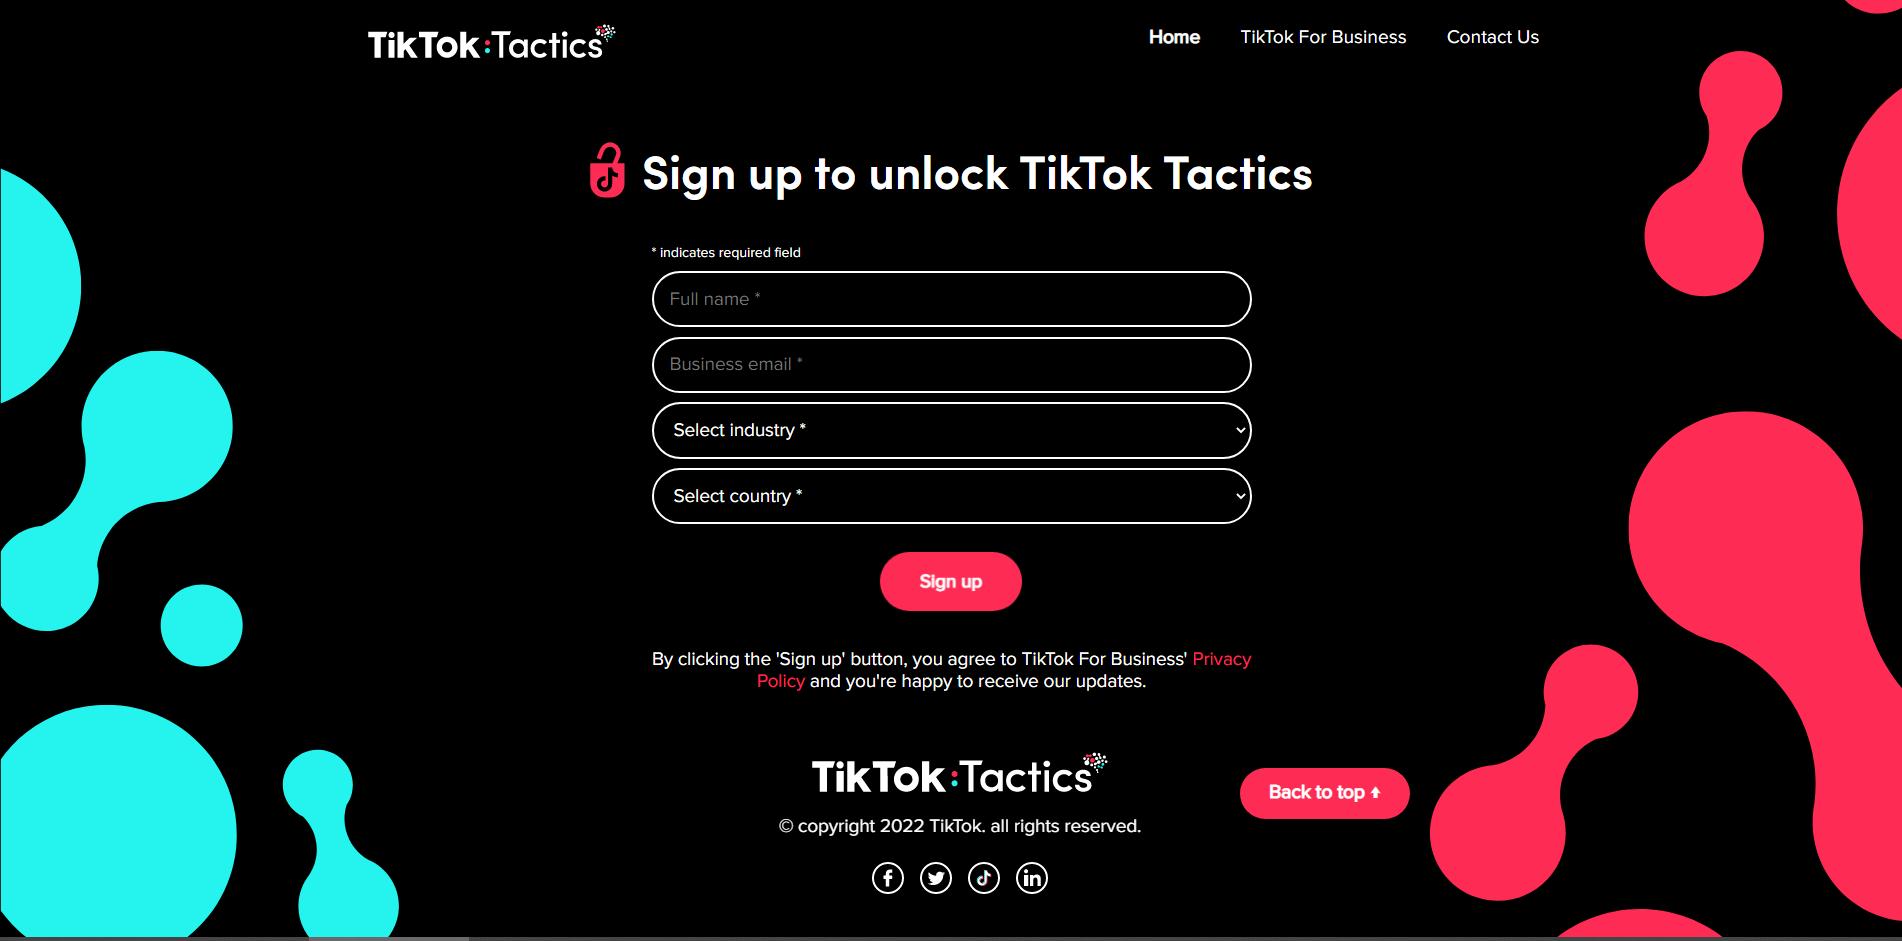 Tiktok tactics tools